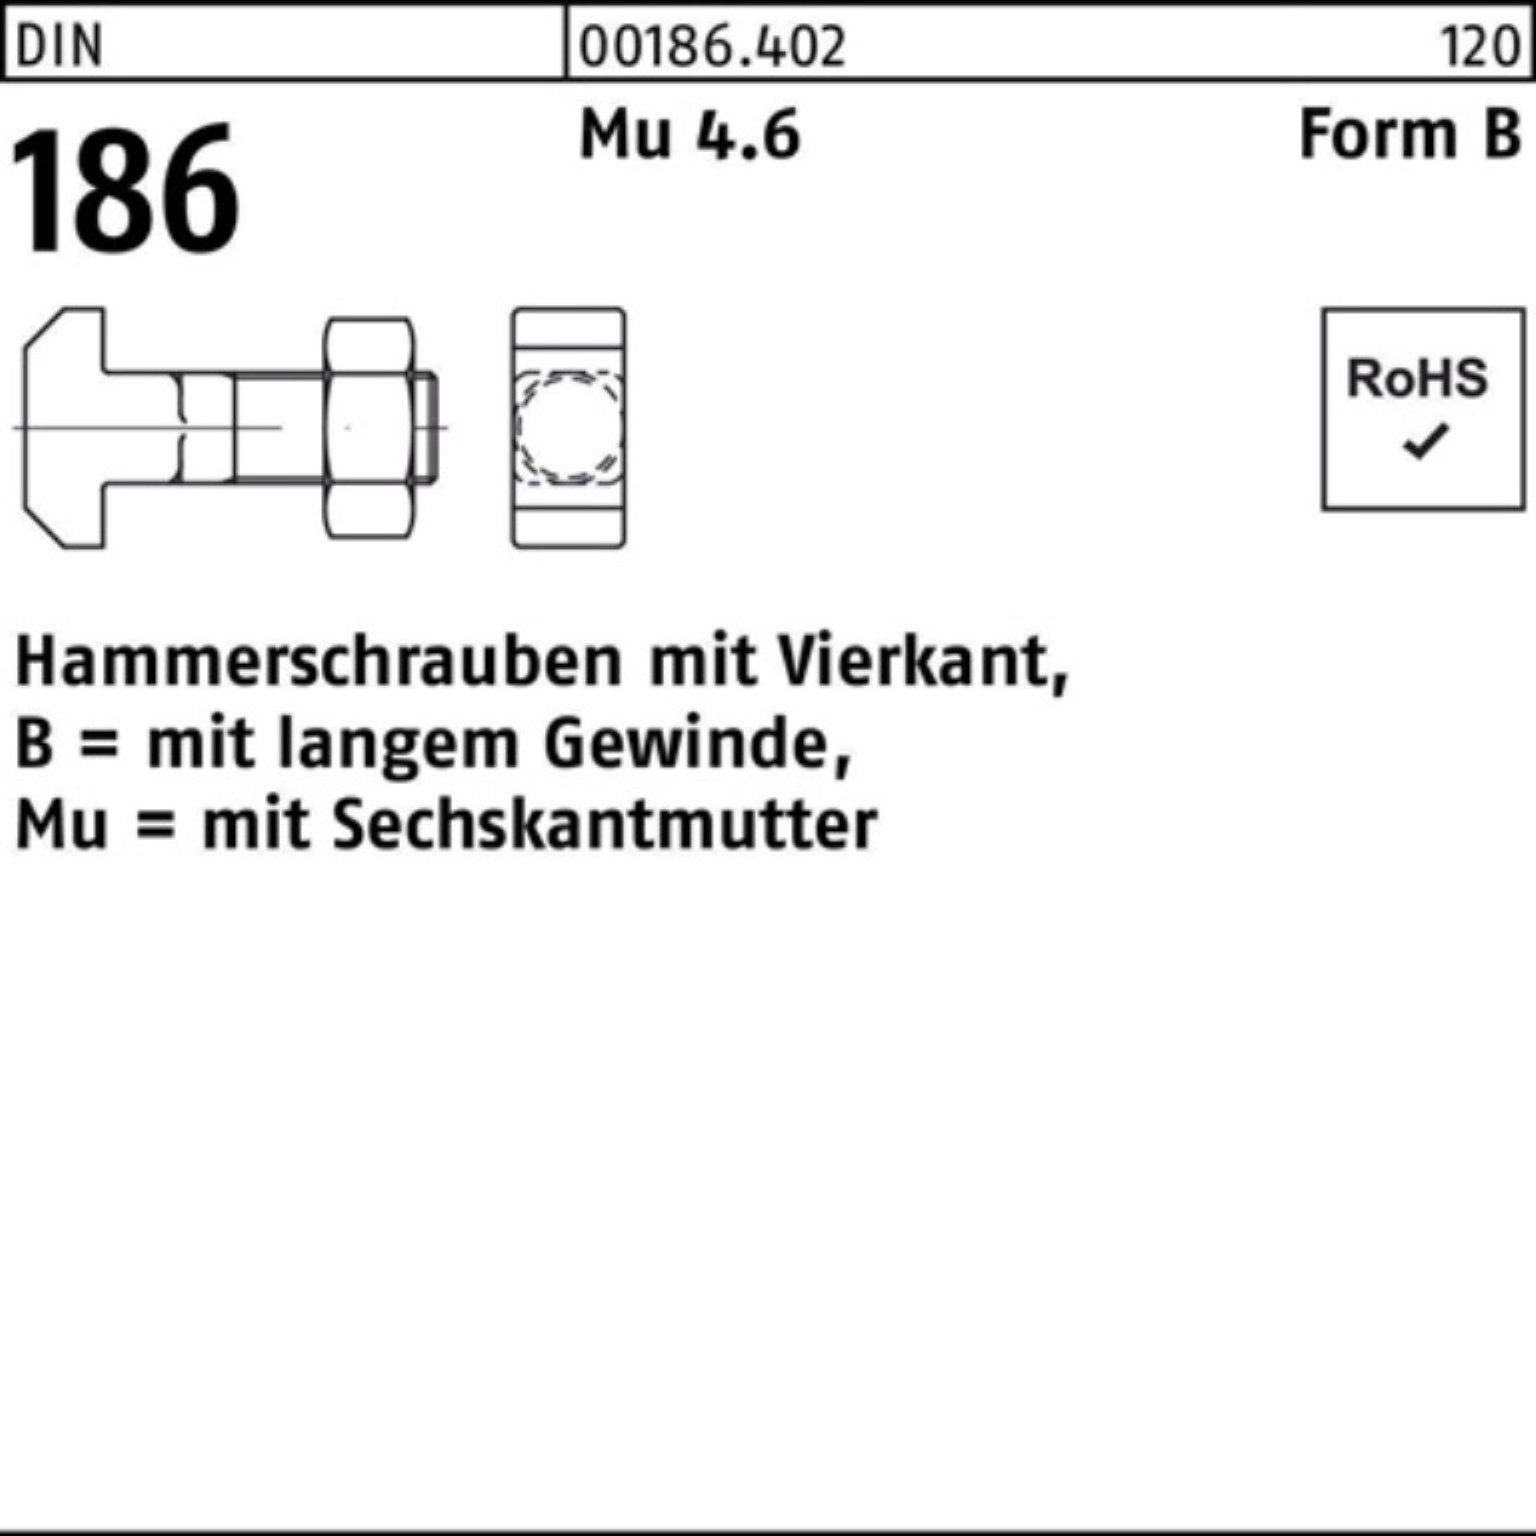 Reyher Schraube 100er Pack Hammerschraube 186 12x FormB BM DIN 6-ktmutter Vierkant 50